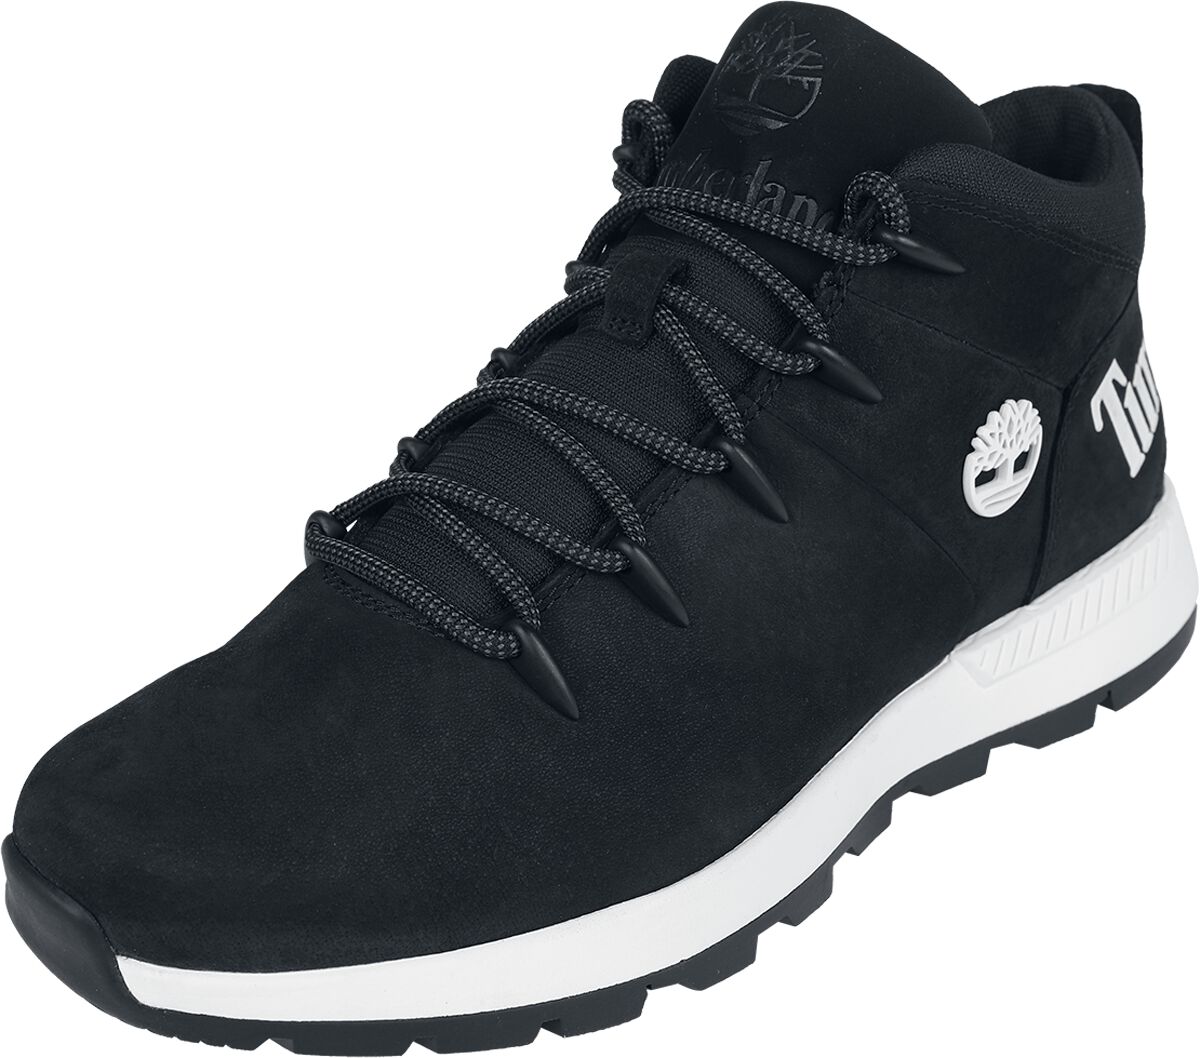 Timberland Sneaker - Sprint Trekker Mid Lace Up - EU41 bis EU46 - für Männer - Größe EU43 - schwarz